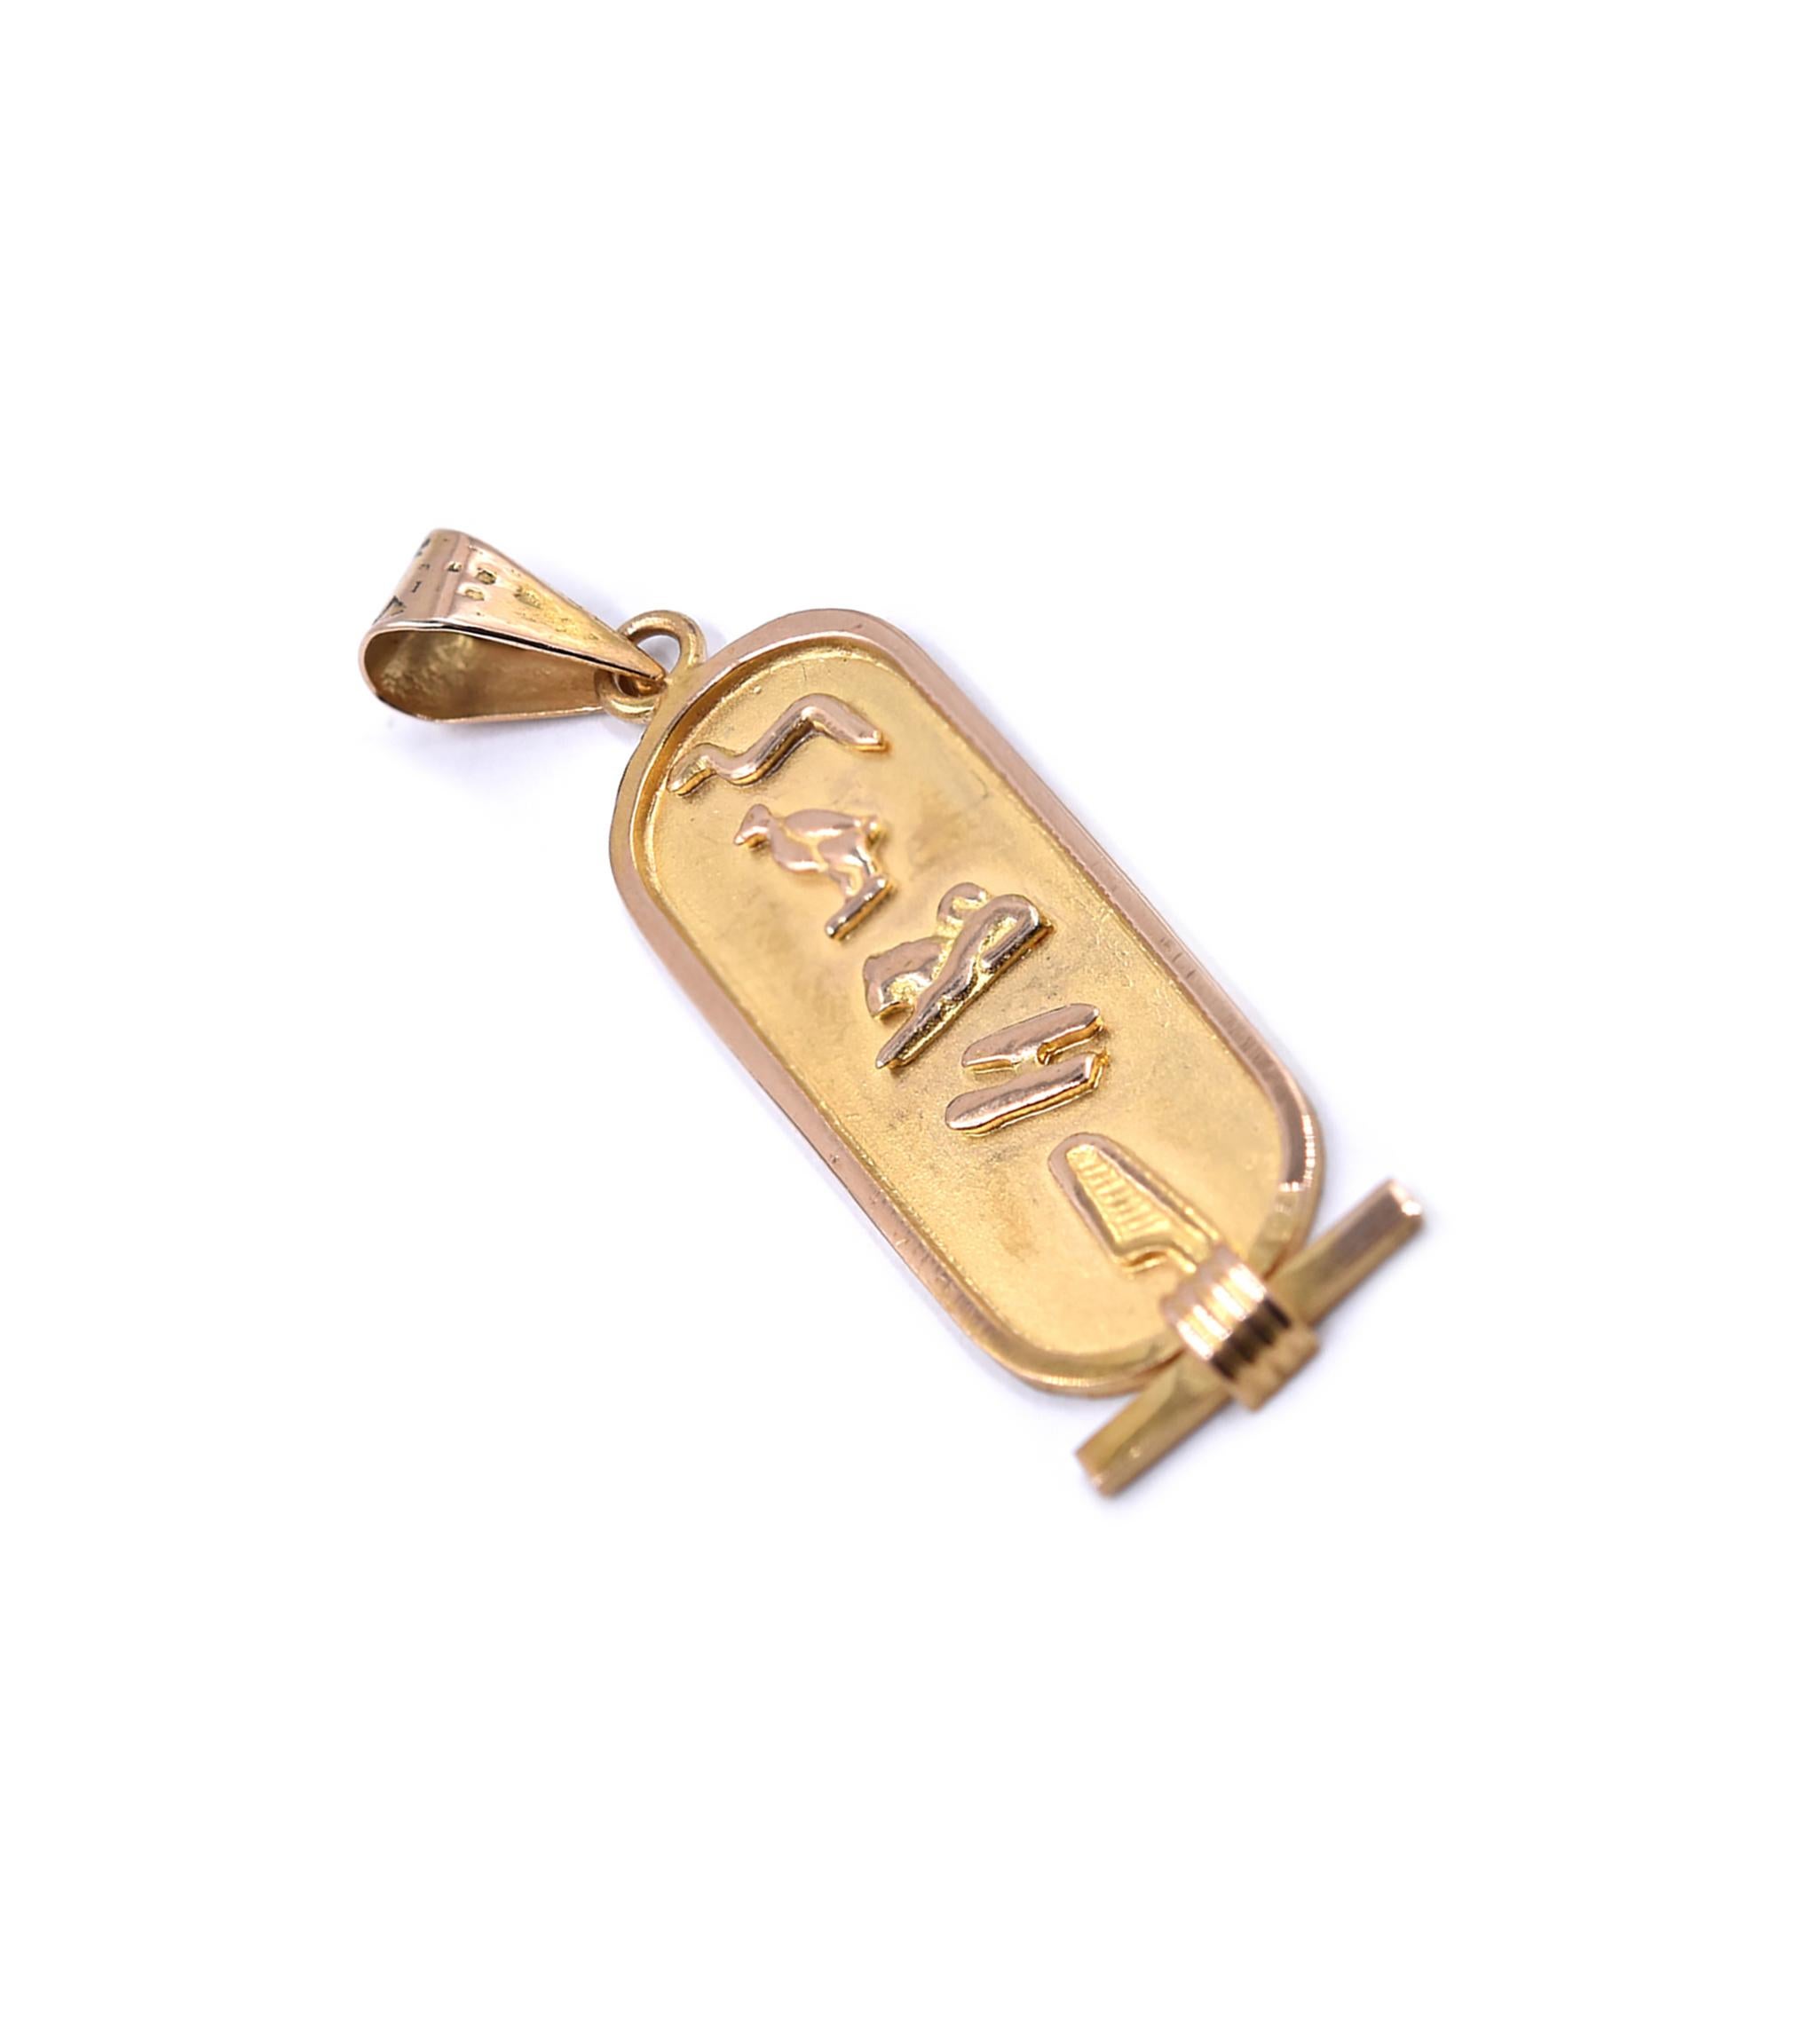 Designer: custom
Material: 18K yellow gold 
Dimensions: pendant measures 44 X 11.5mm
Weight: 2.51 grams
